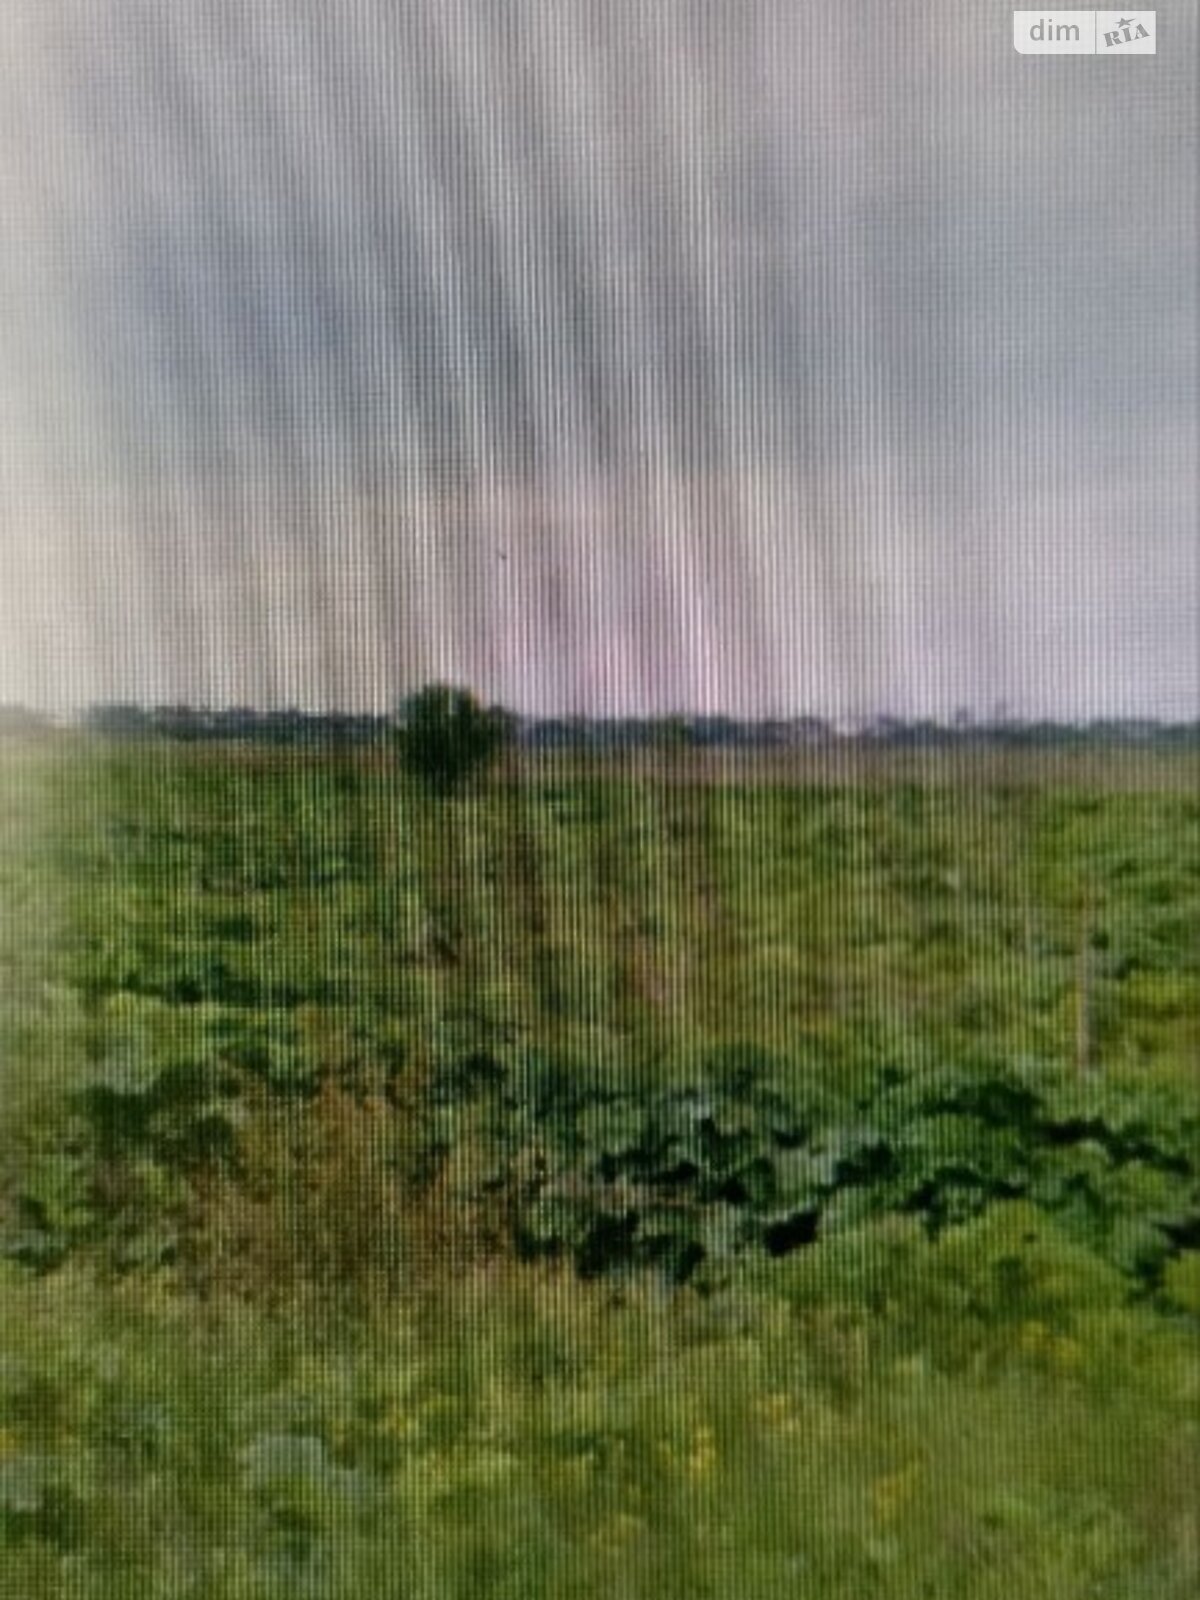 Земельный участок сельскохозяйственного назначения в Криховцах, площадь 4.7 сотки фото 1